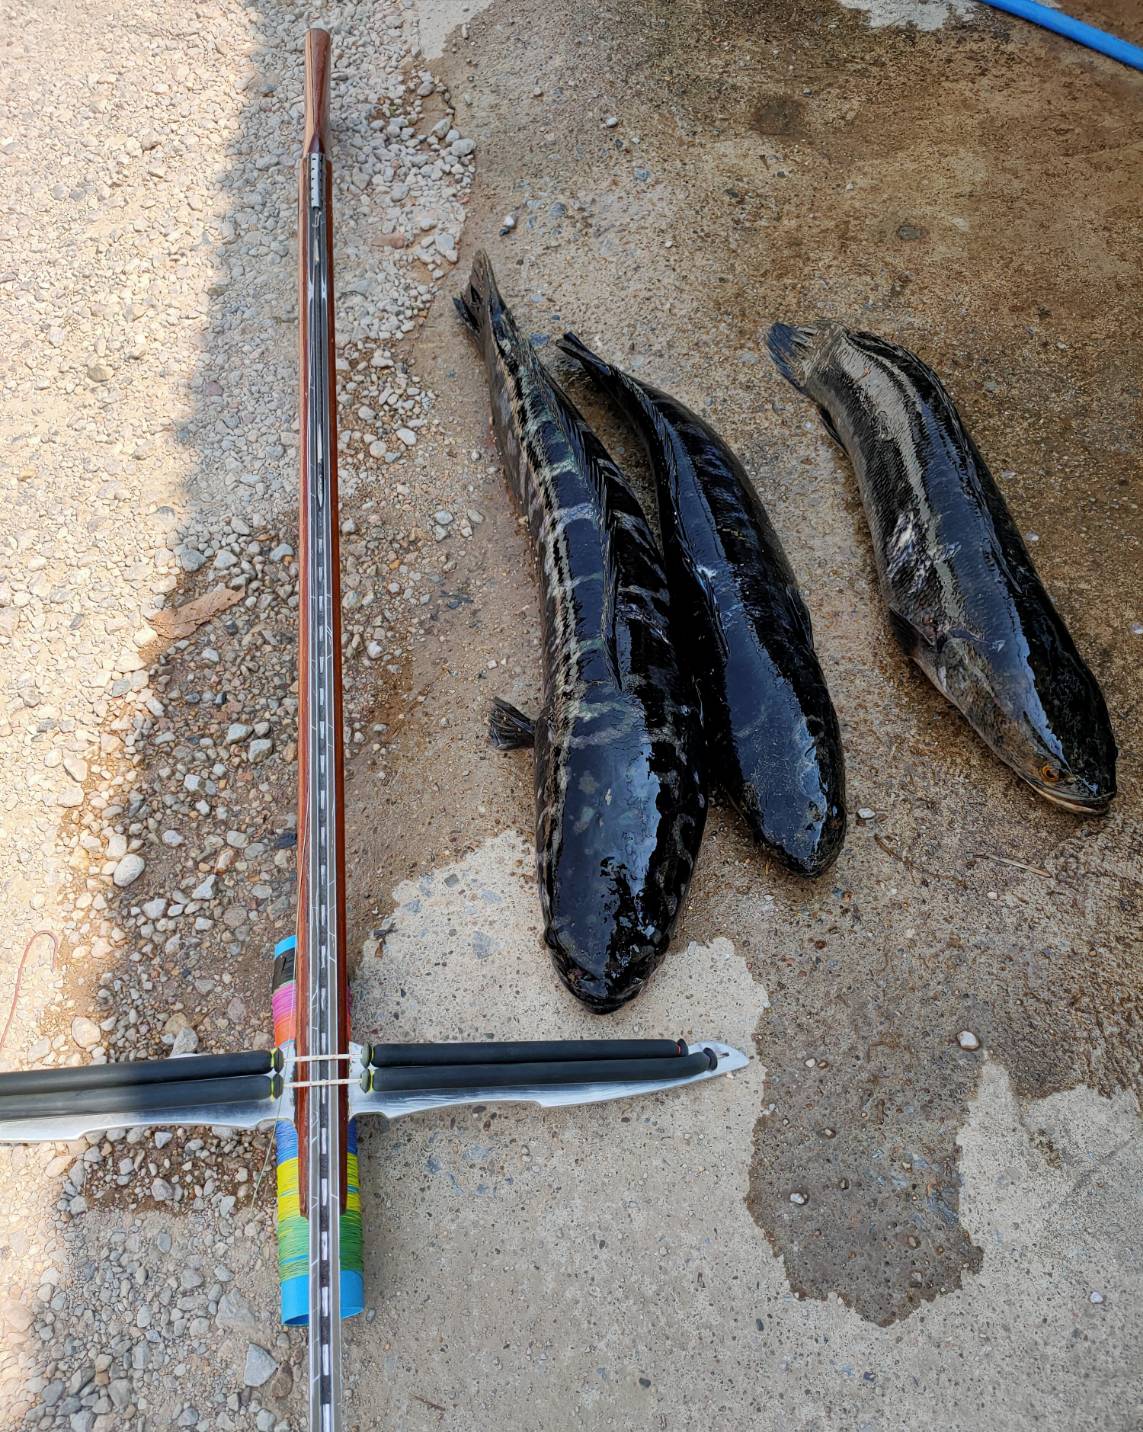 ข้อมูลเพิ่มเติมของ แว่นยิงปลา เลนส์สีชา เลนส์ออโต้ตกปลาตัดแสงสะท้อนเห็นปลาชัดมาก